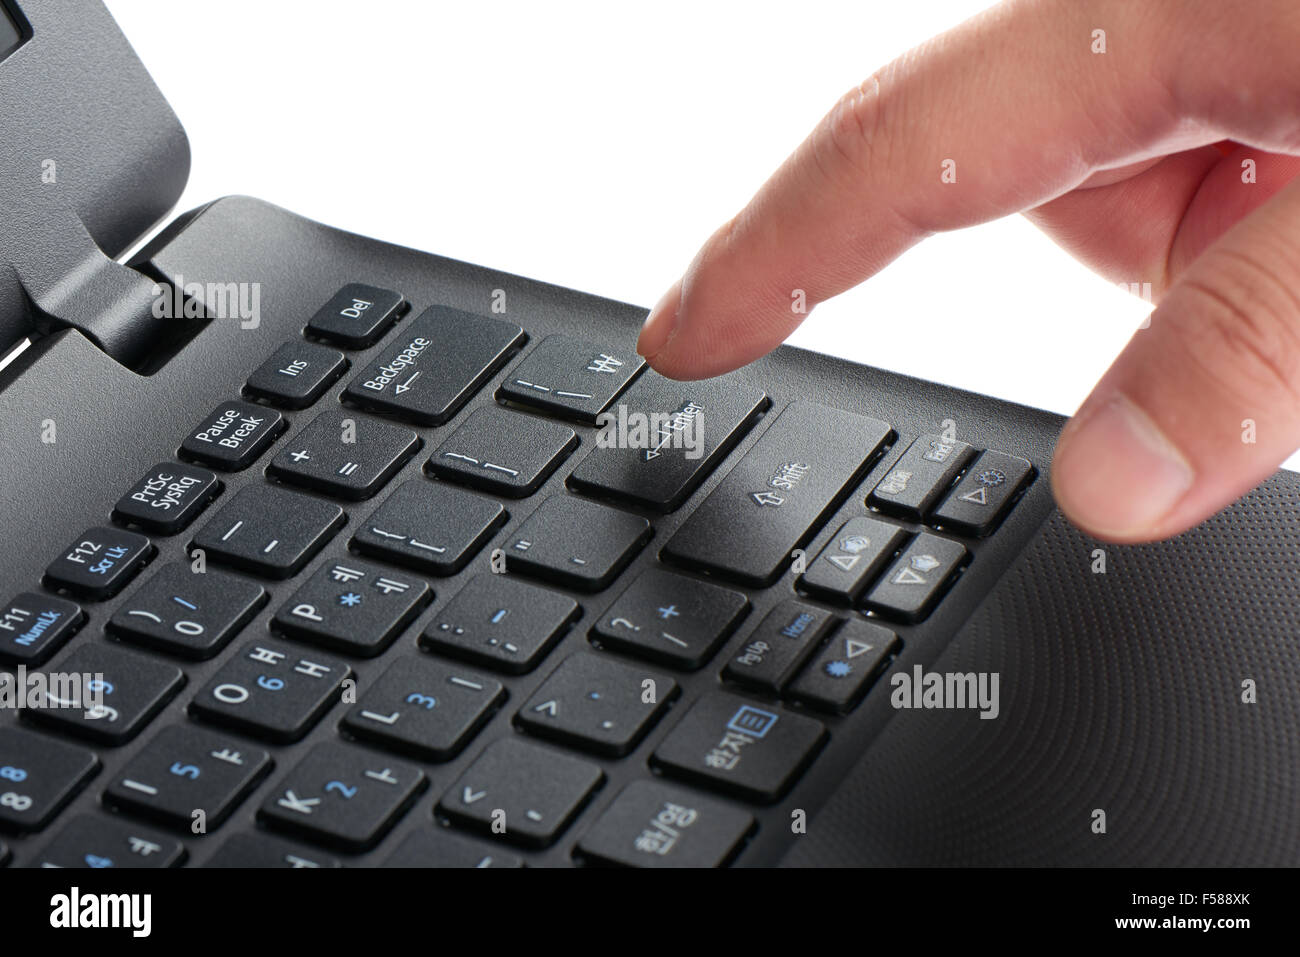 Primer plano de una laptop de teclado con el dedo índice presionando la tecla Intro, aislado en blanco Foto de stock